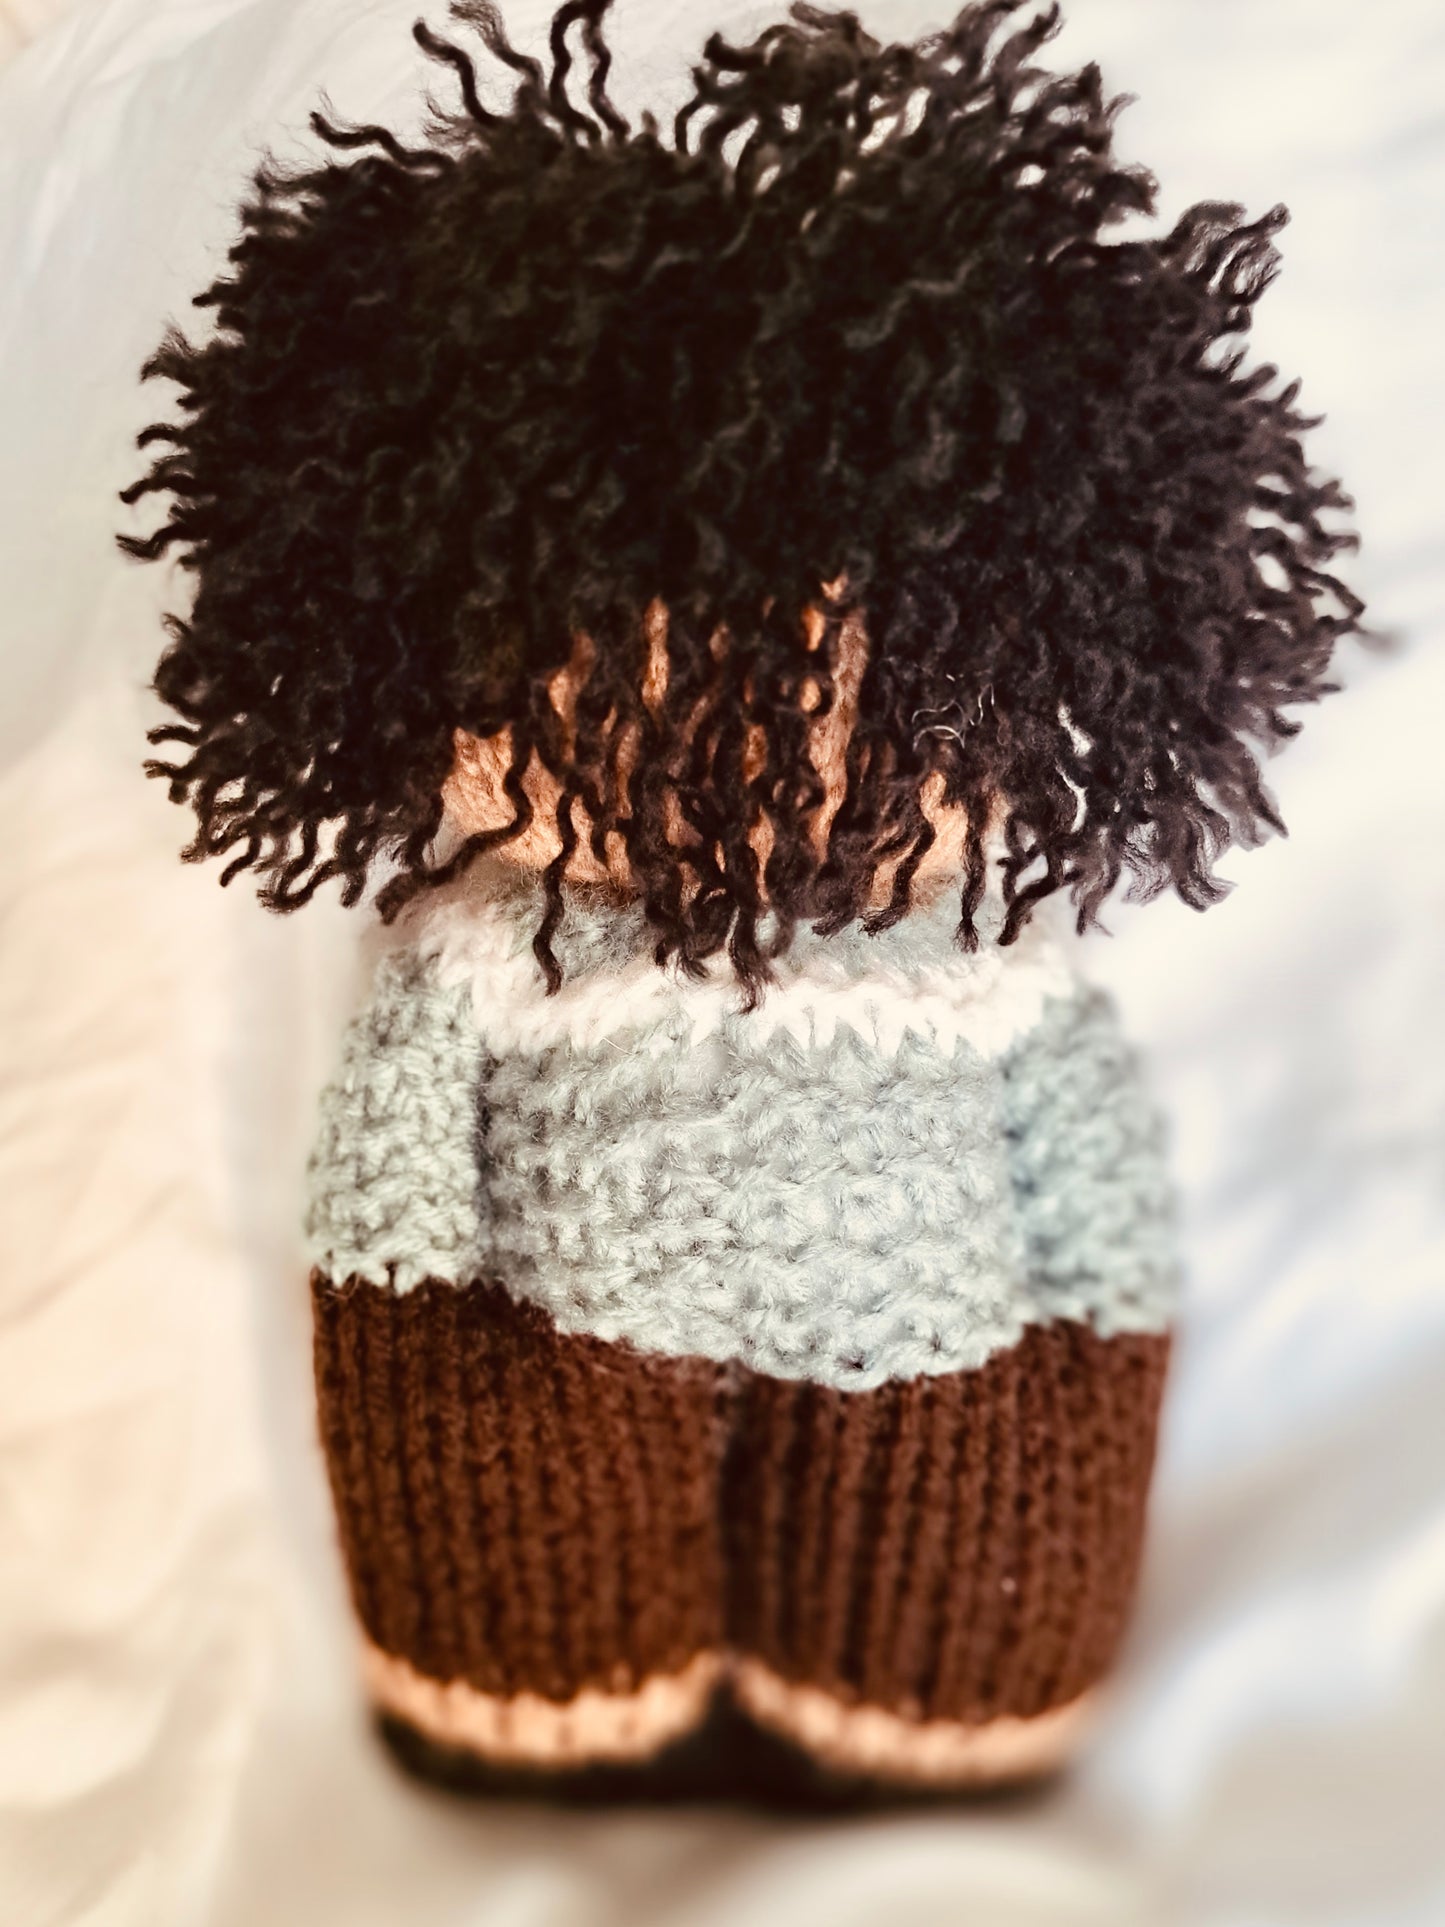 Black knit doll - boy with curls